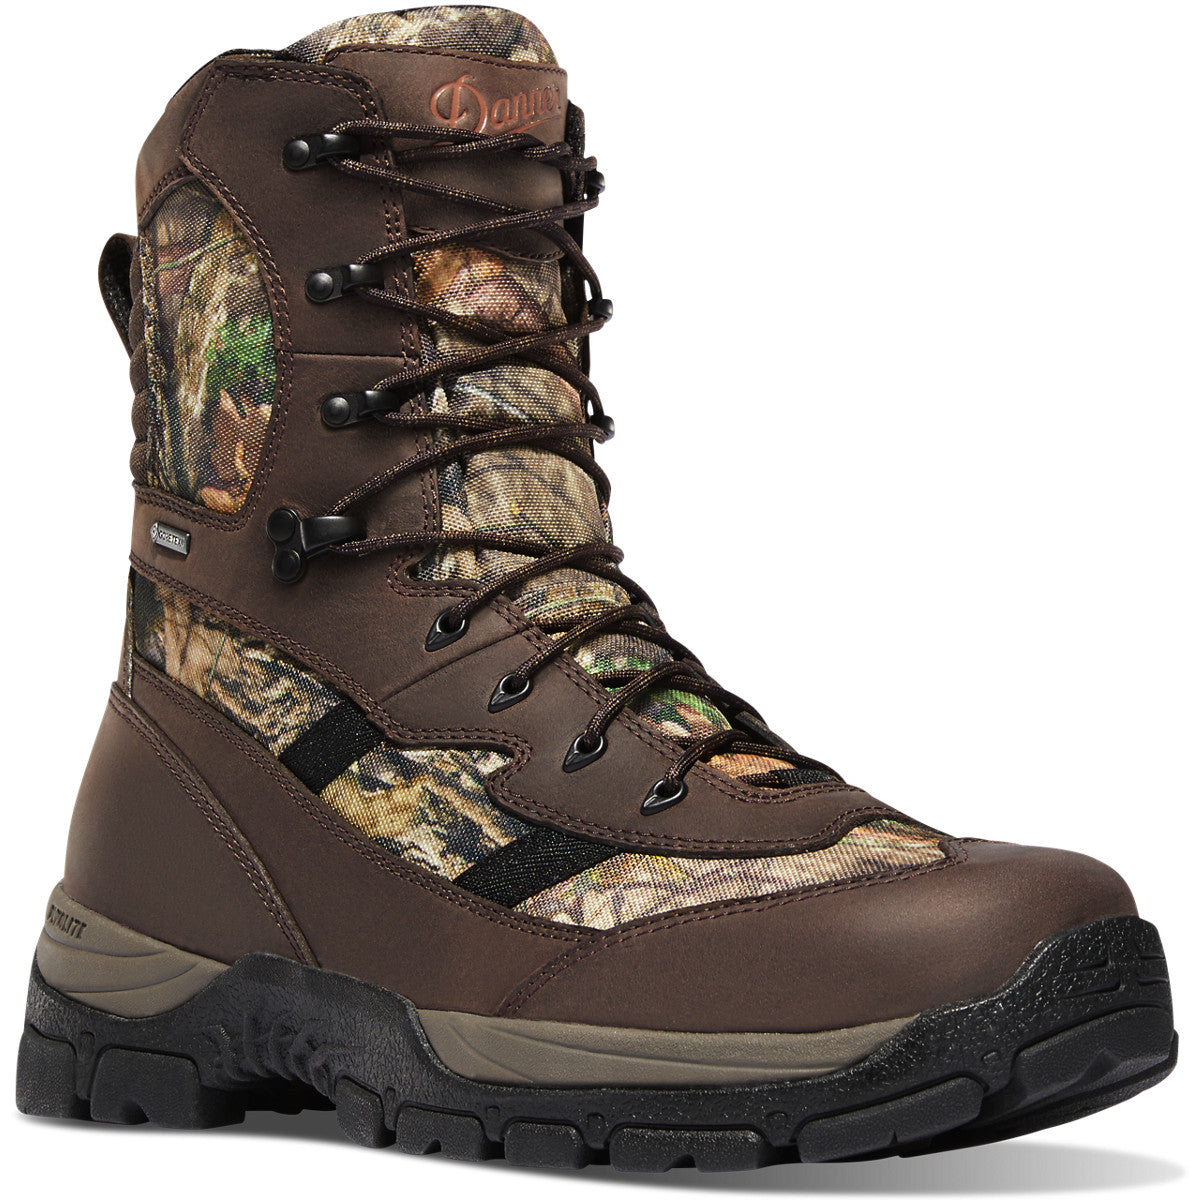 Danner Men's Alsea 8" WP 1000G Insulated Hunt Boot - Mossy Oak - 46724 8 / Medium / Mossy Oak - Overlook Boots